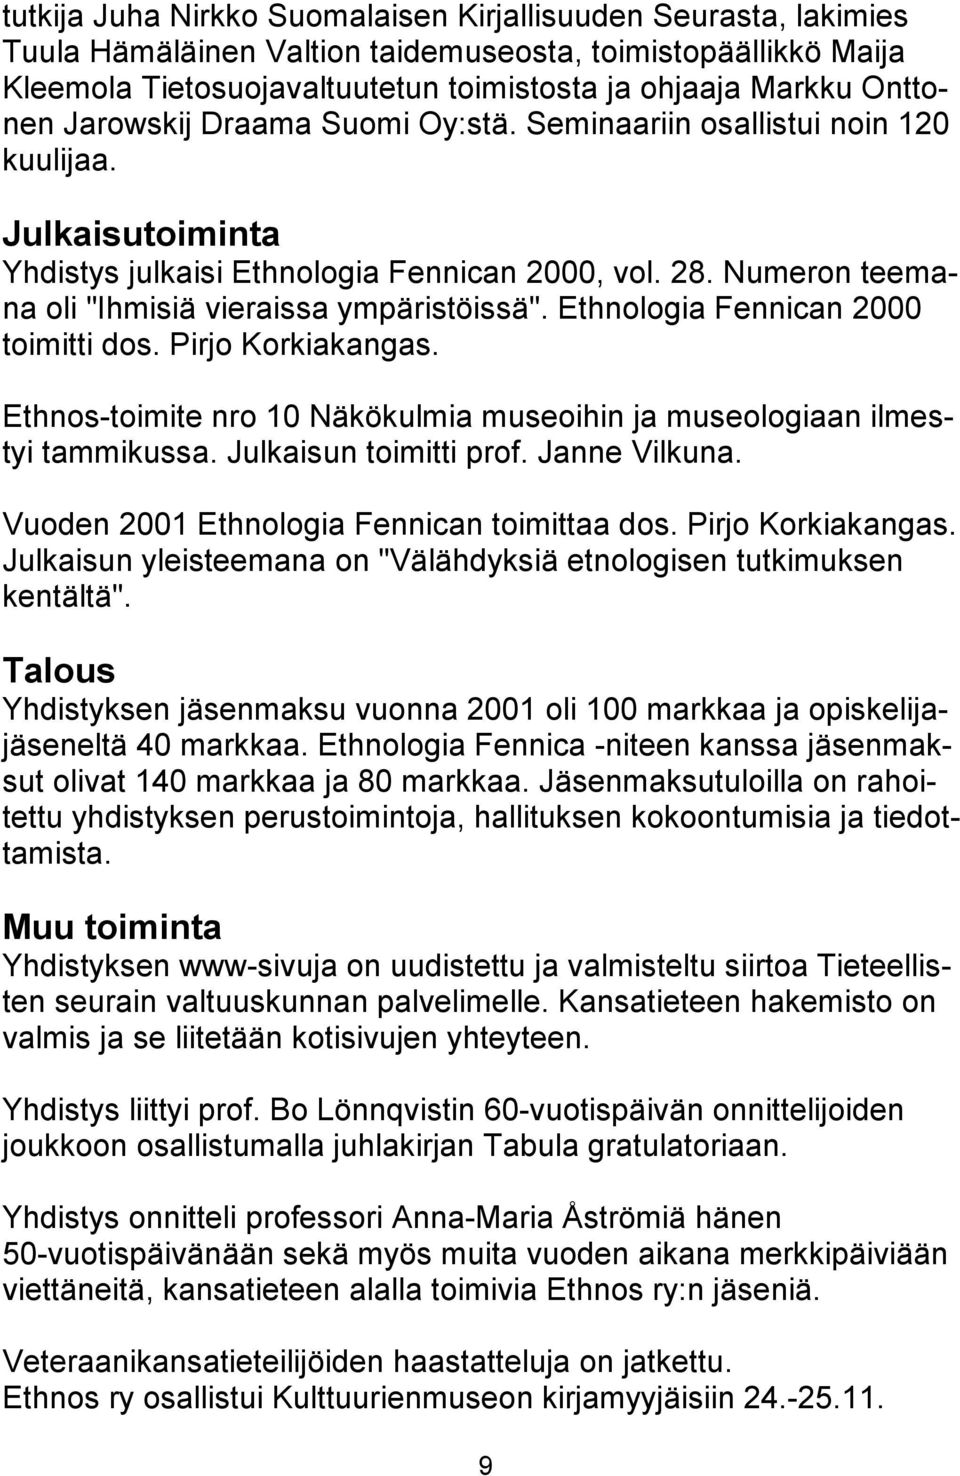 Ethnologia Fennican 2000 toimitti dos. Pirjo Korkiakangas. Ethnos-toimite nro 10 Näkökulmia museoihin ja museologiaan ilmestyi tammikussa. Julkaisun toimitti prof. Janne Vilkuna.